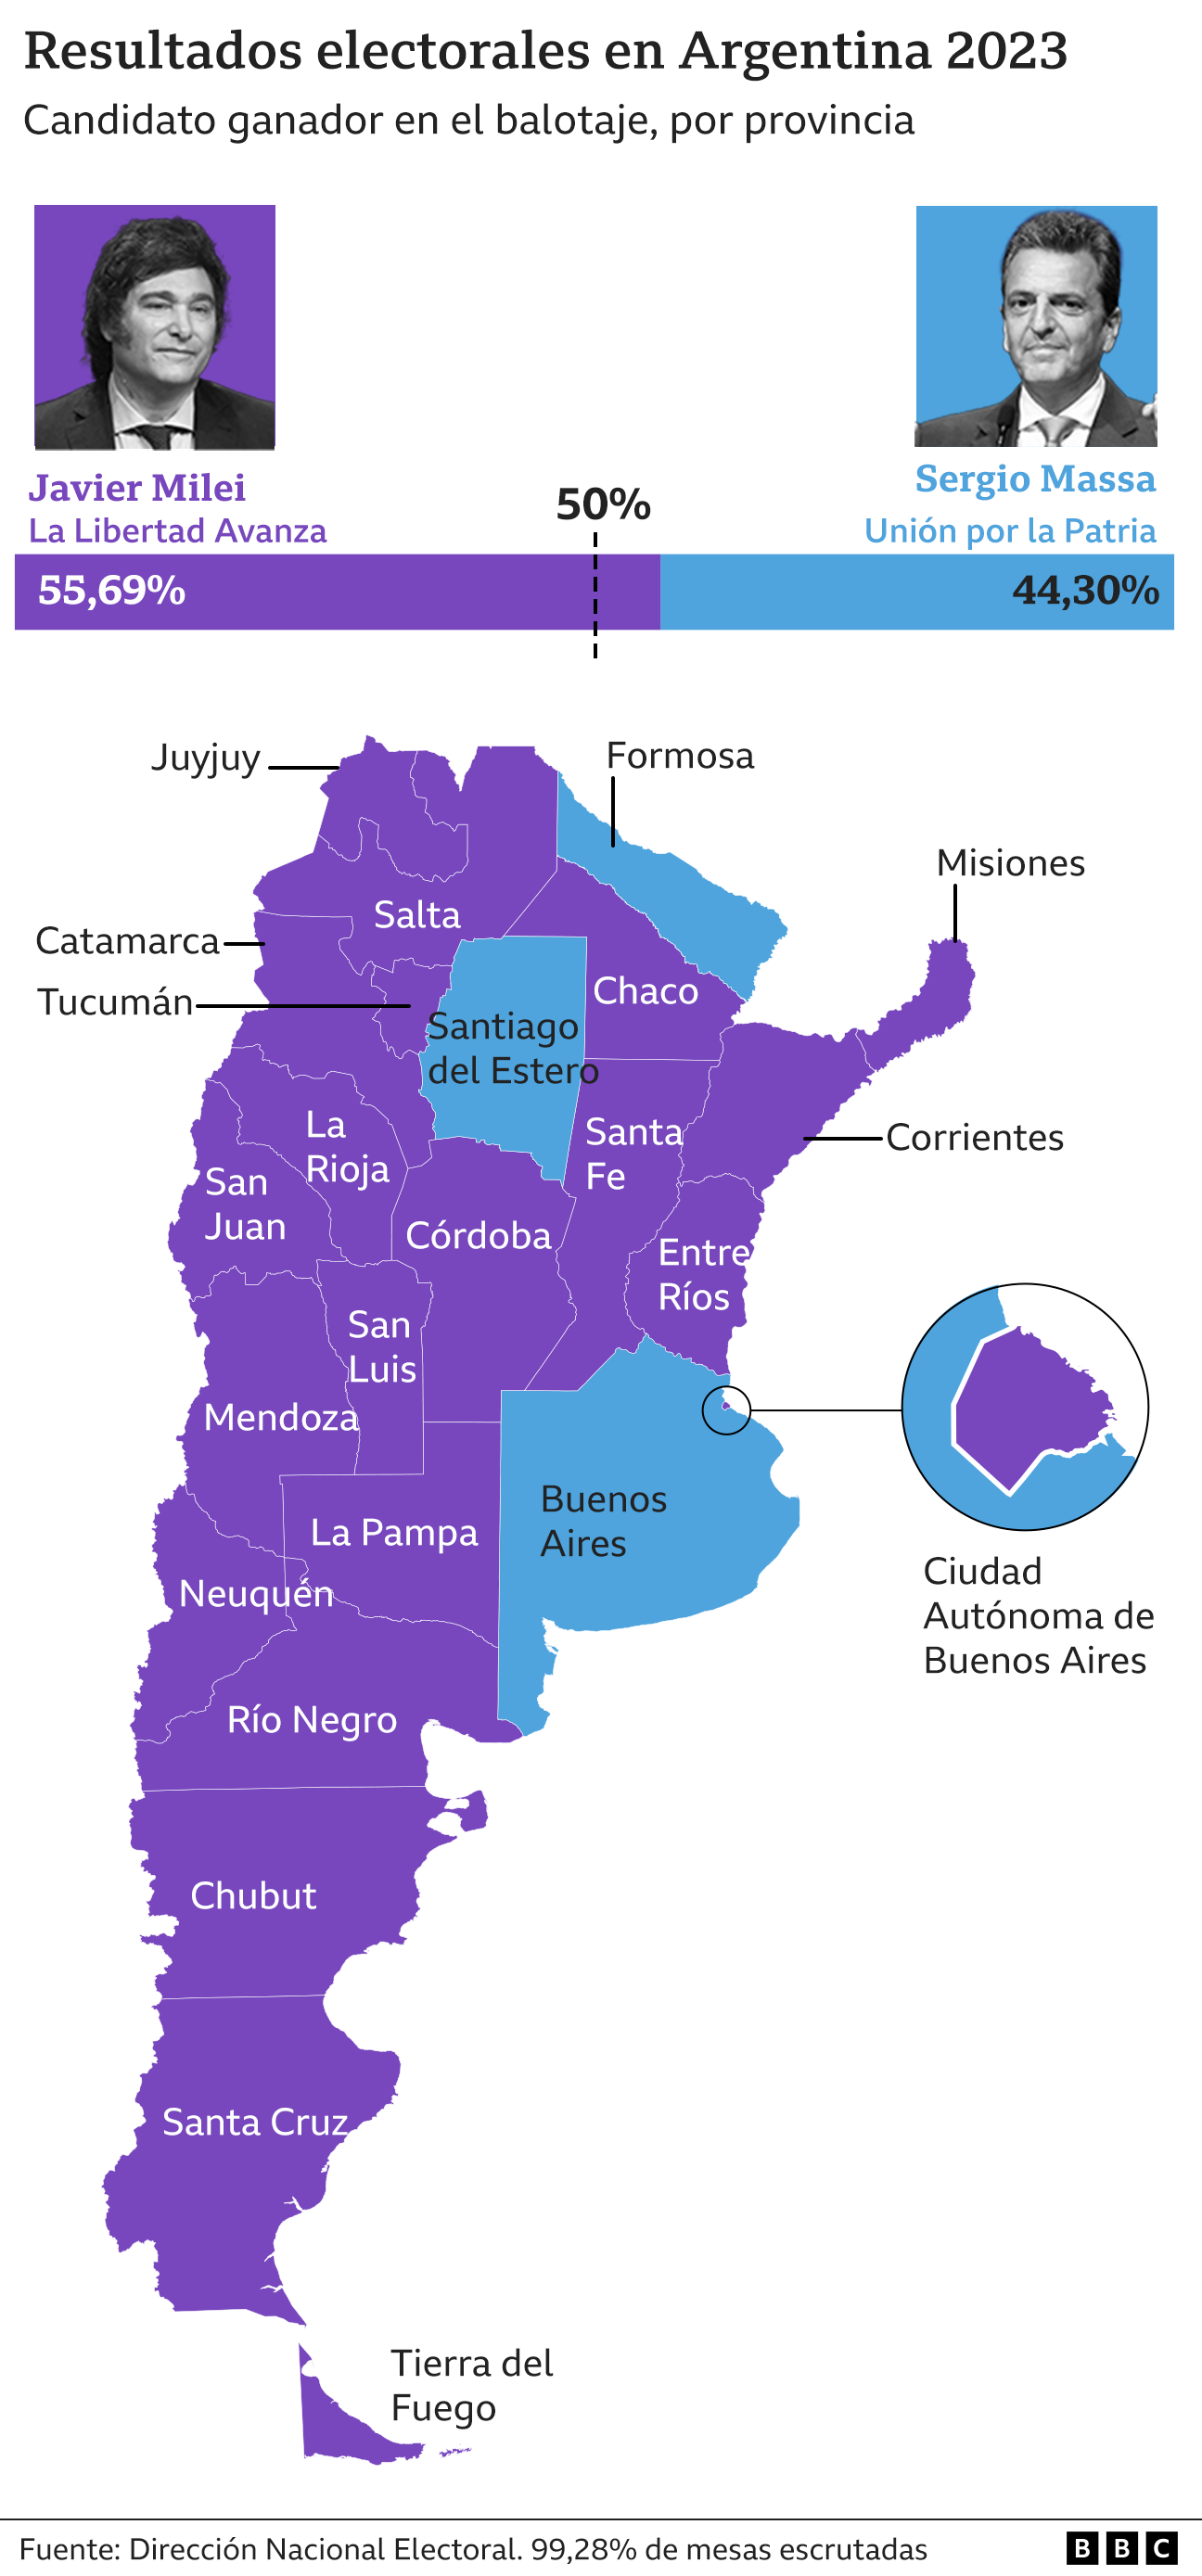 Mapa resultados electorales definitivos Argentina